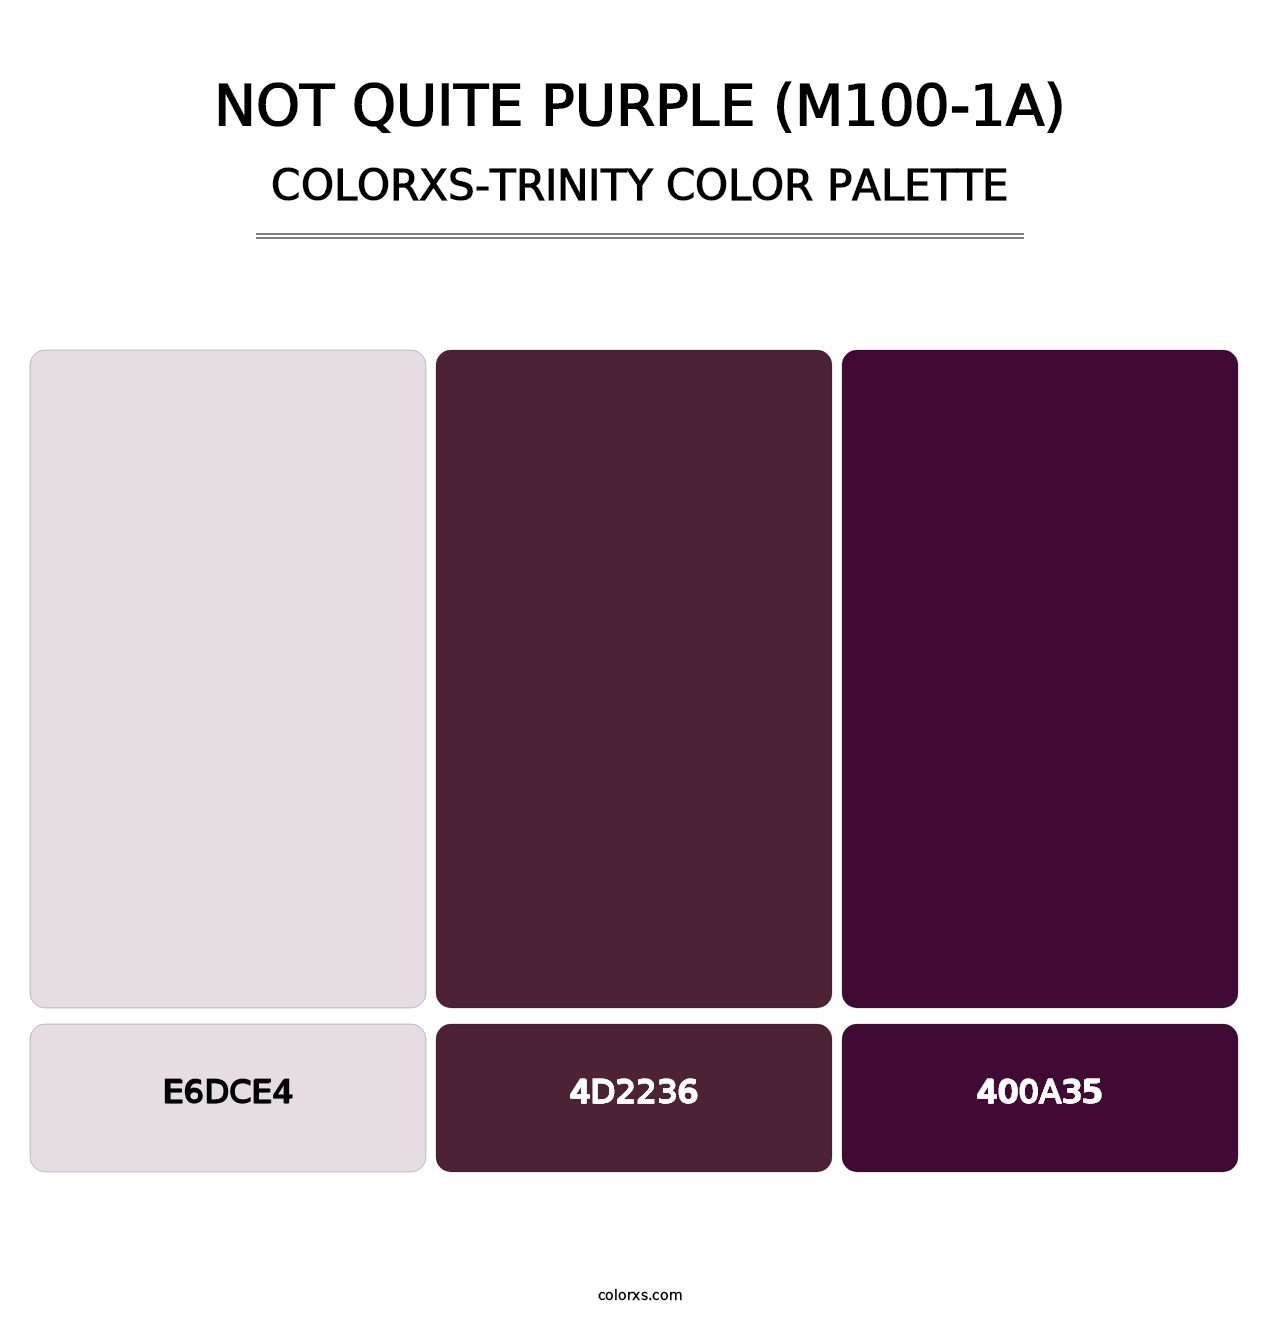 Not Quite Purple (M100-1A) - Colorxs Trinity Palette